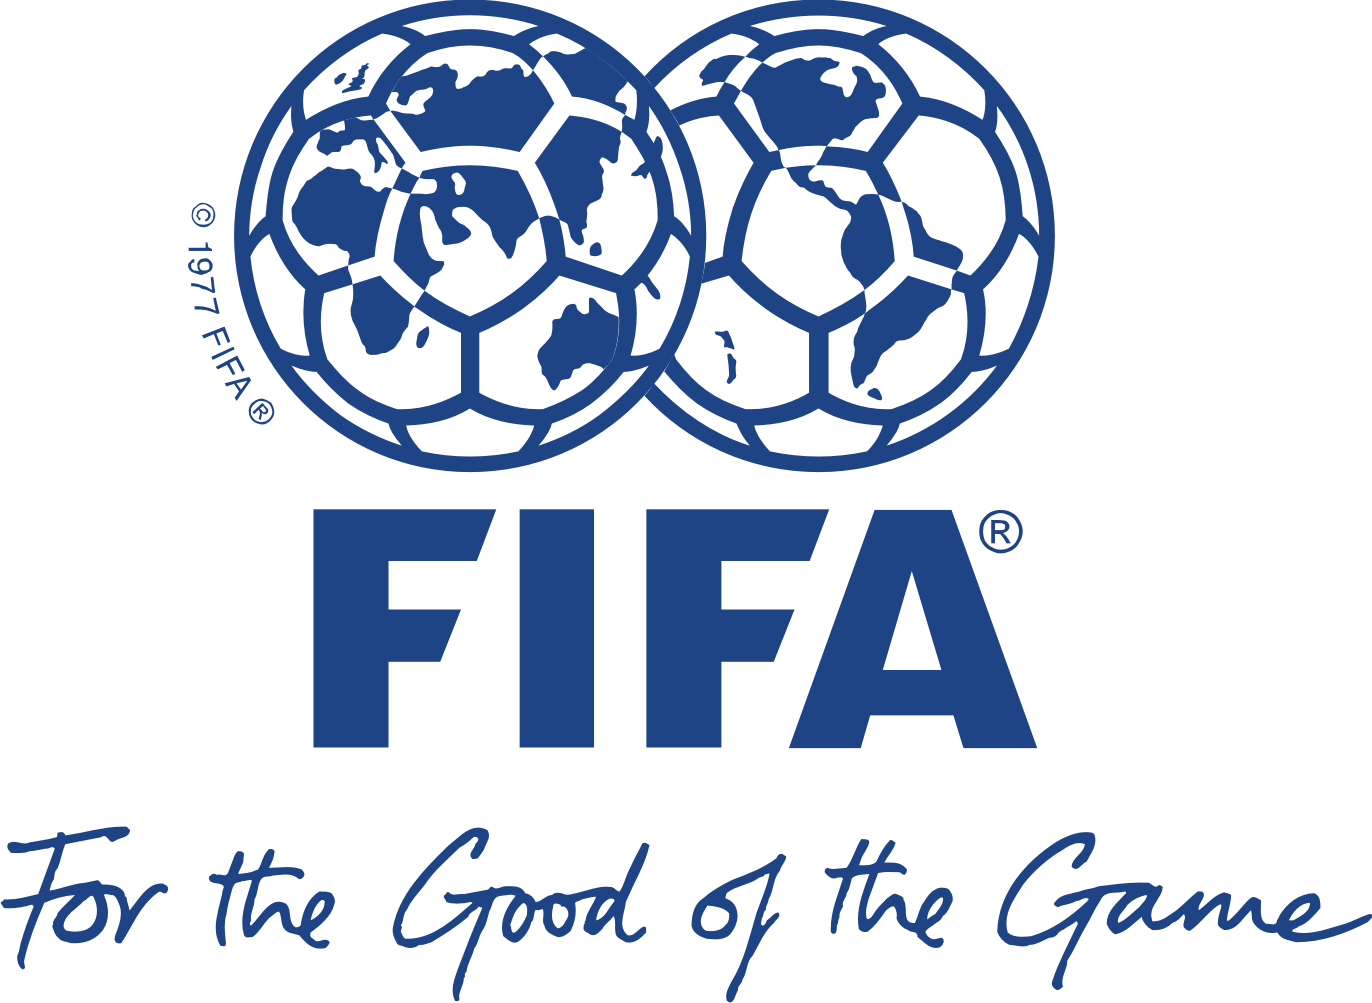 Fifa logo PNG